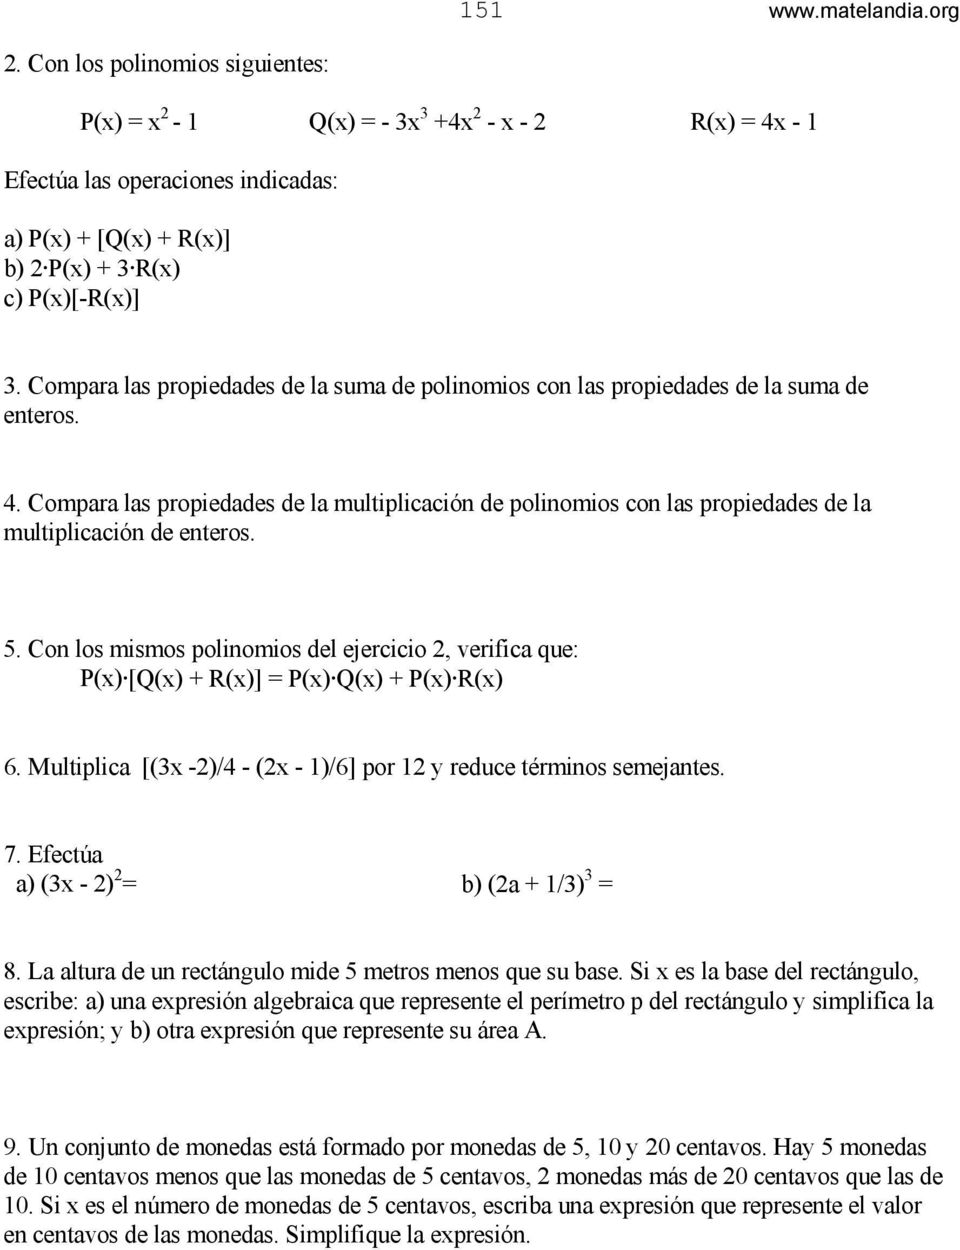 Compara las propiedades de la multiplicación de polinomios con las propiedades de la multiplicación de enteros. 5.